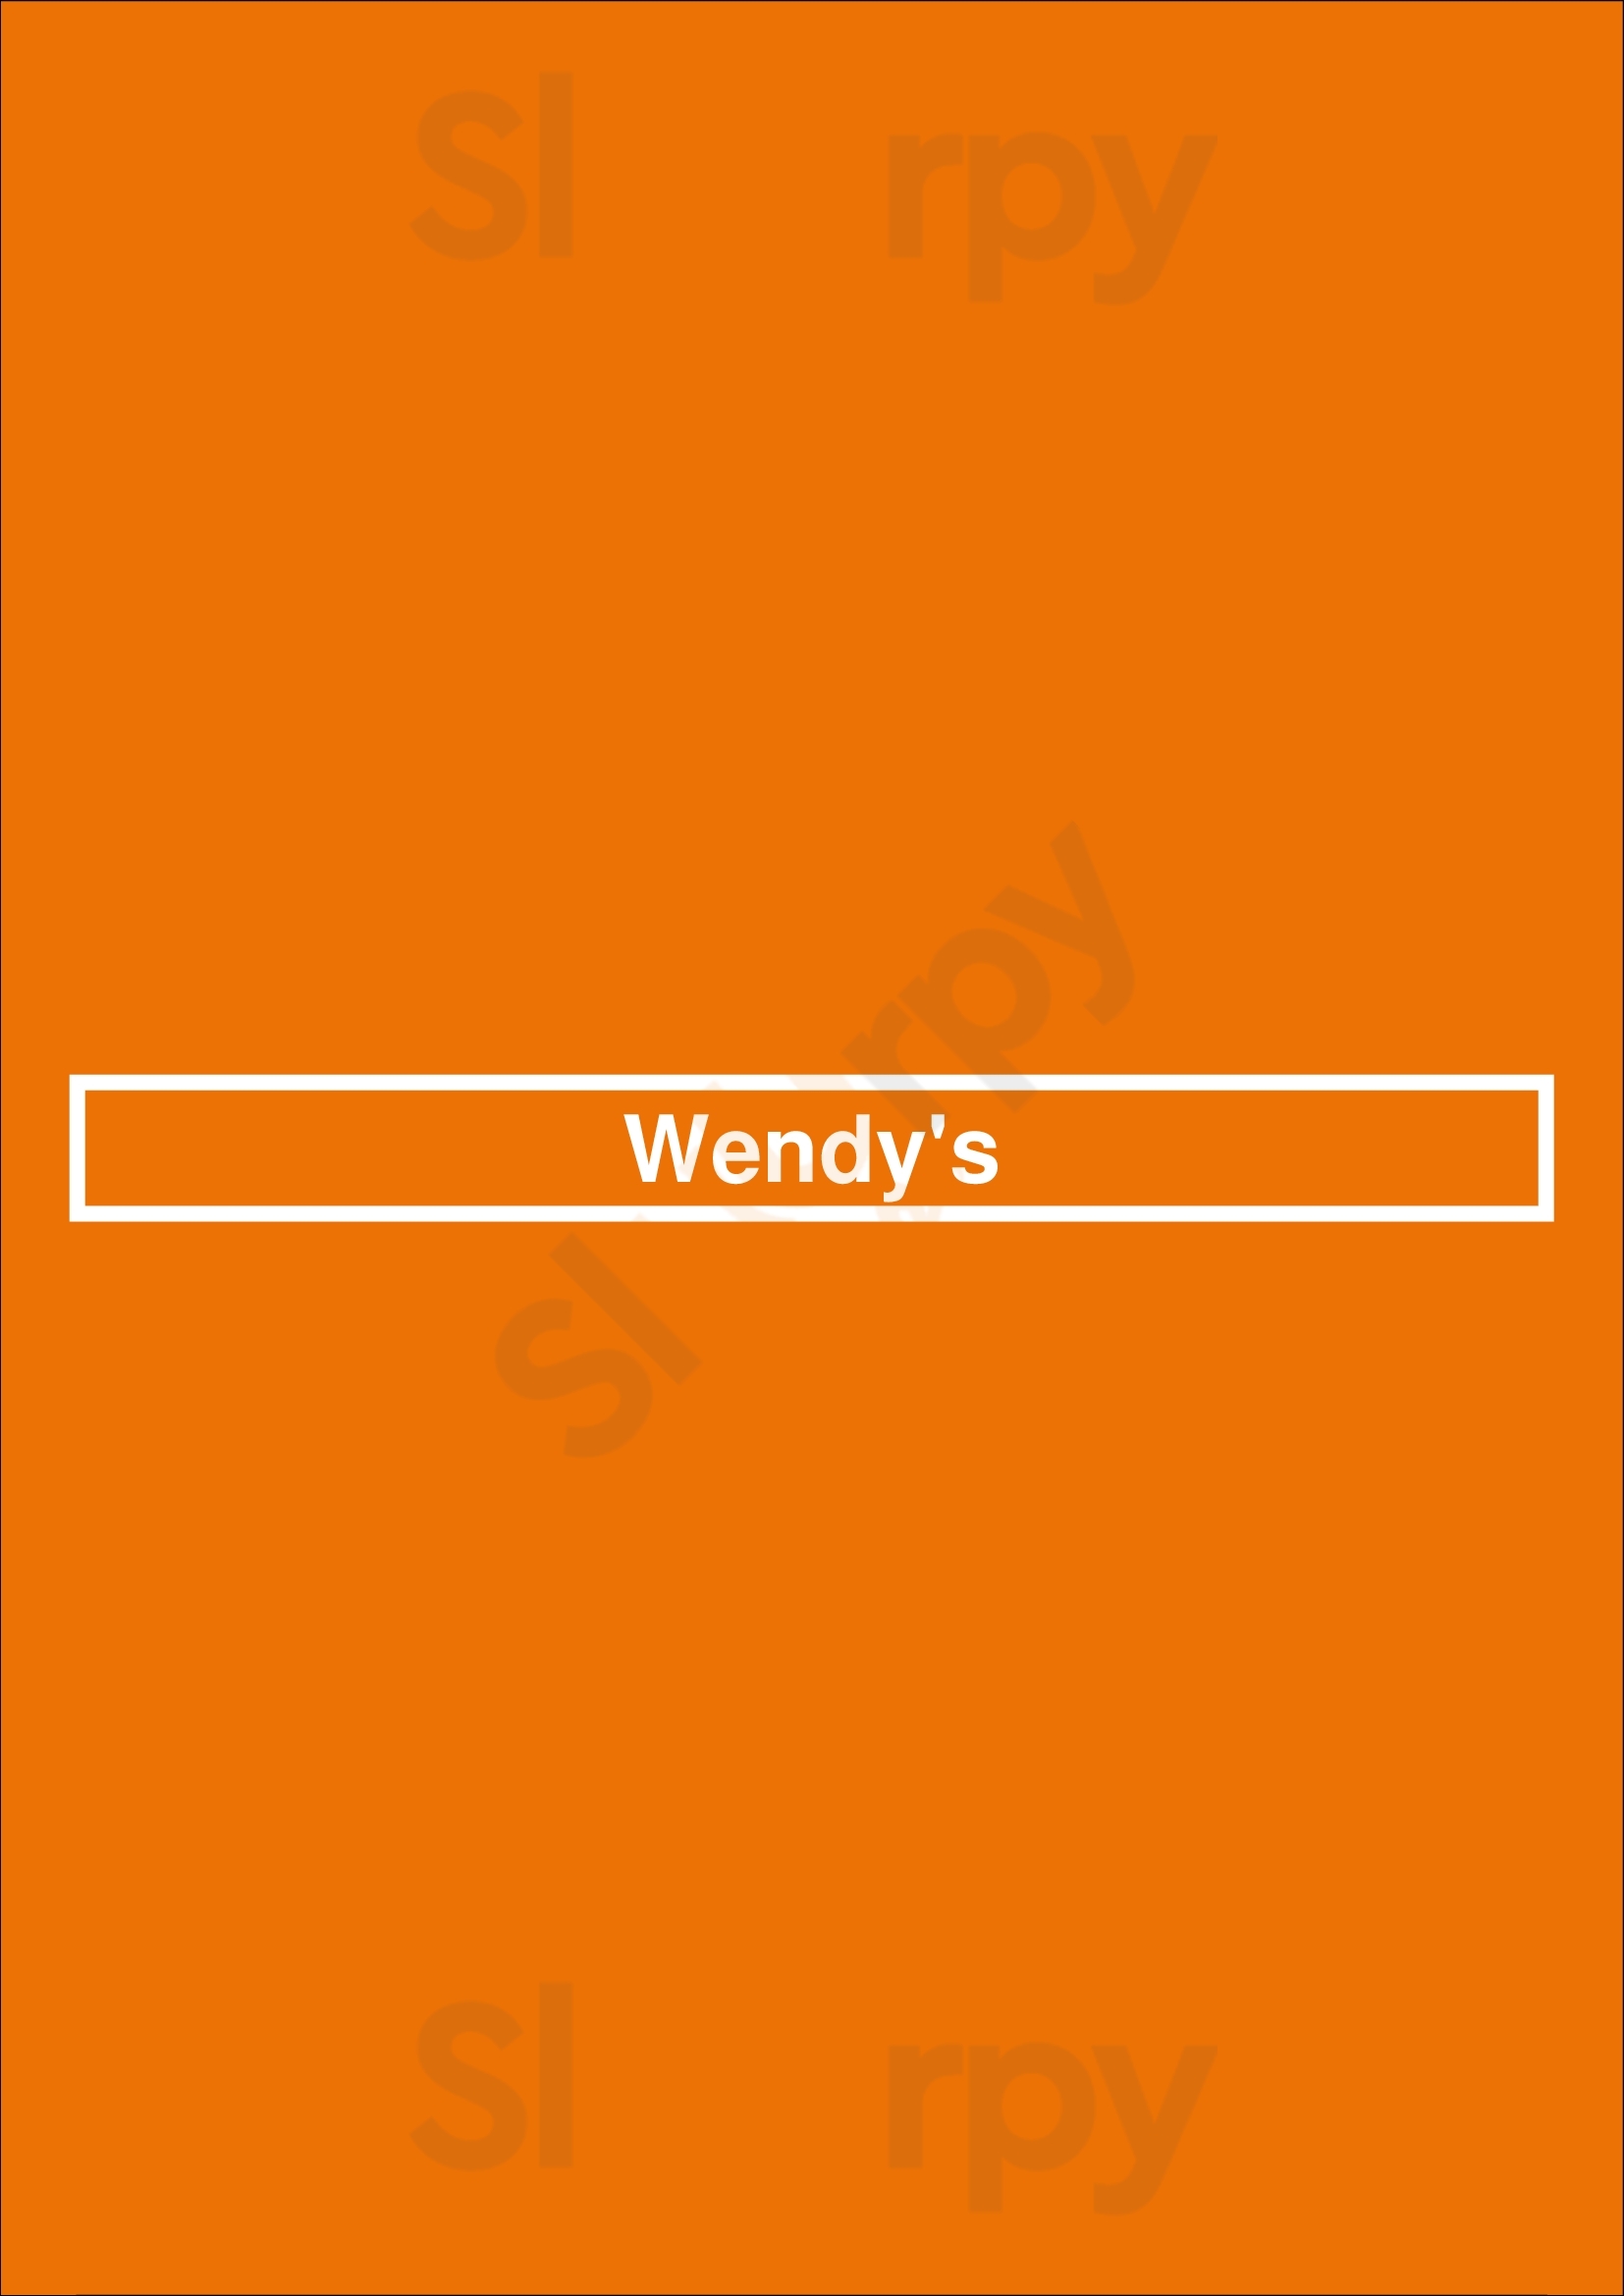 Wendy's Prattville Menu - 1